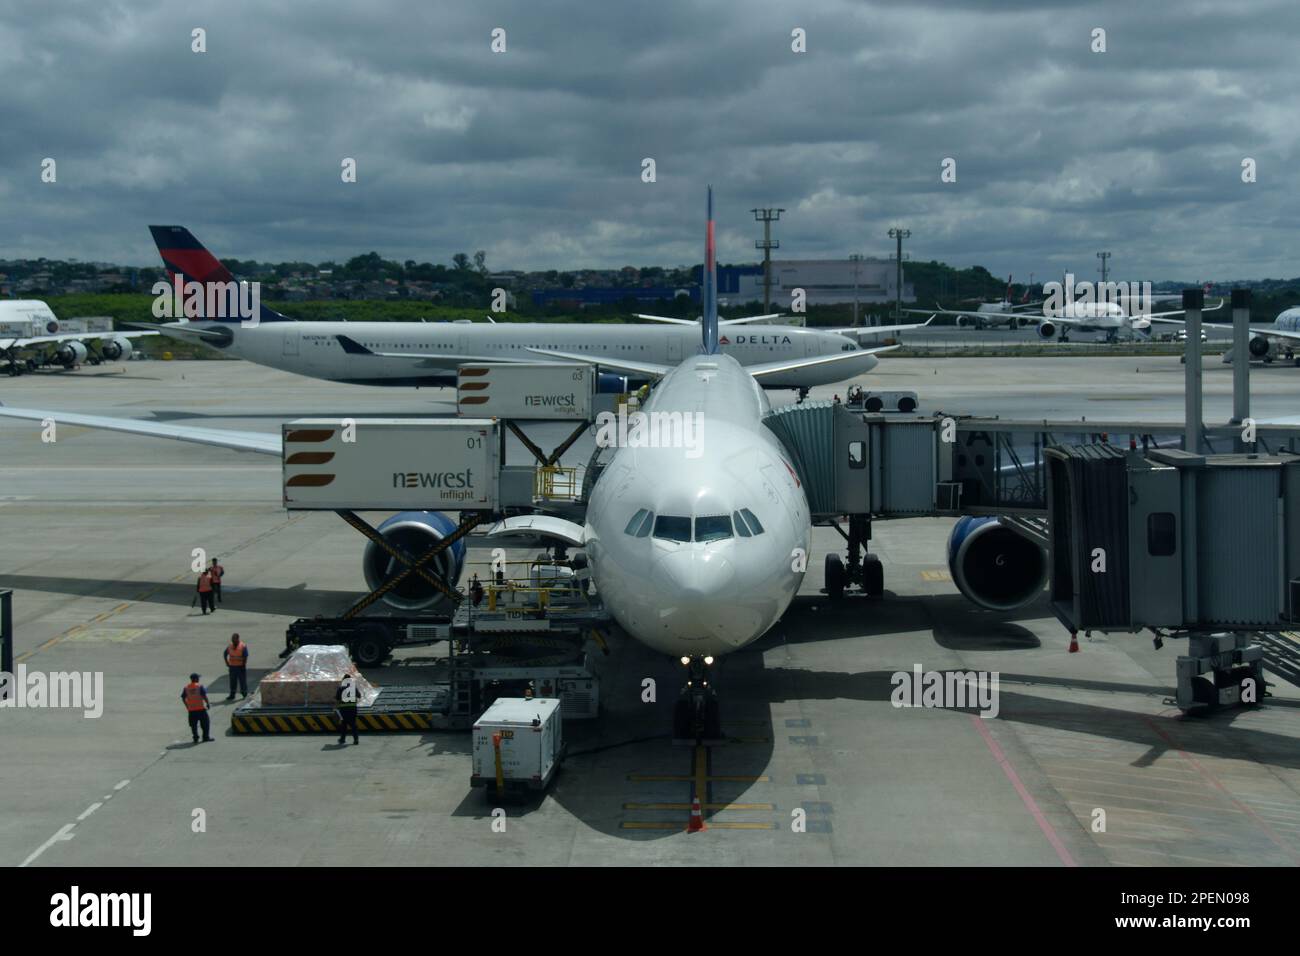 Am internationalen Flughafen Sao Paulo/Guarulhos wird die Boeing 787 Dreamliner für den nächsten Flug gewartet oder aufgefüllt. Andere Flugzeuge im Bild. Stockfoto